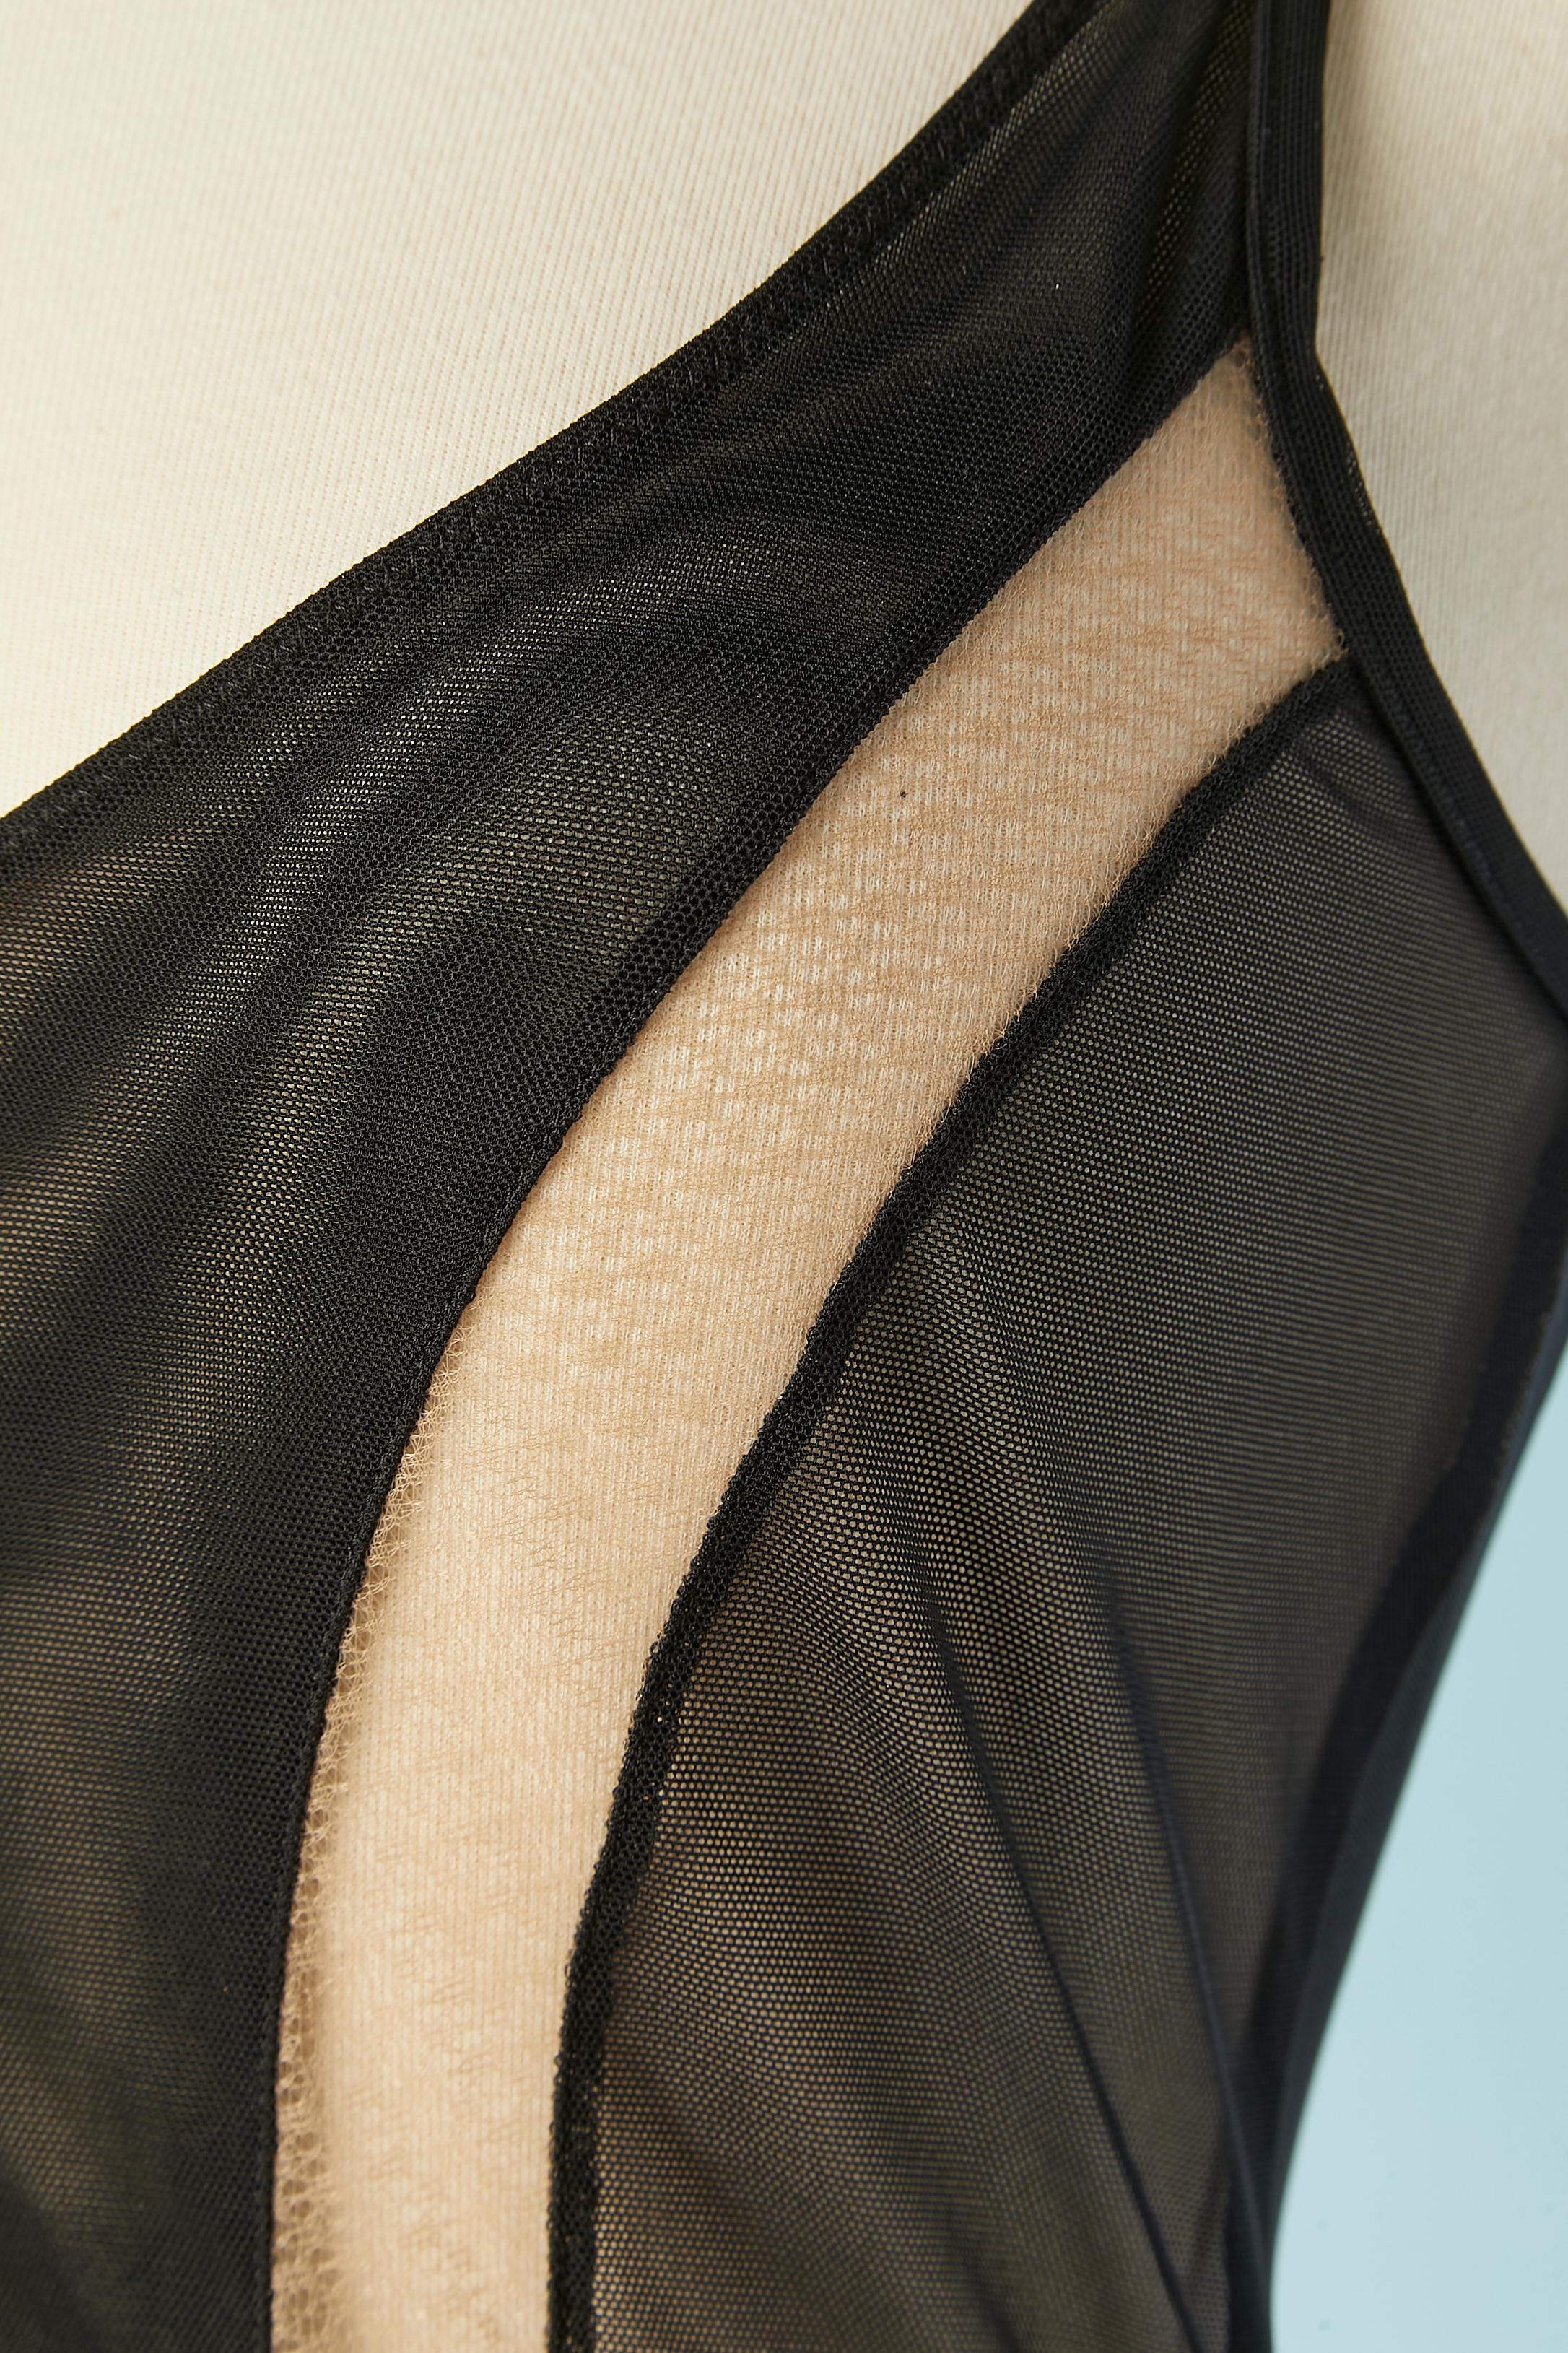 Schwarz-beigefarbenes, durchsichtiges Slip-Kleid aus Tüll mit Cut-Out. NEU mit Etikett.
Zusammensetzung des Stoffes: Nylon, Polyester, Elasthan, Tüll. 
GRÖSSE 38 (Fr) S (Us) 